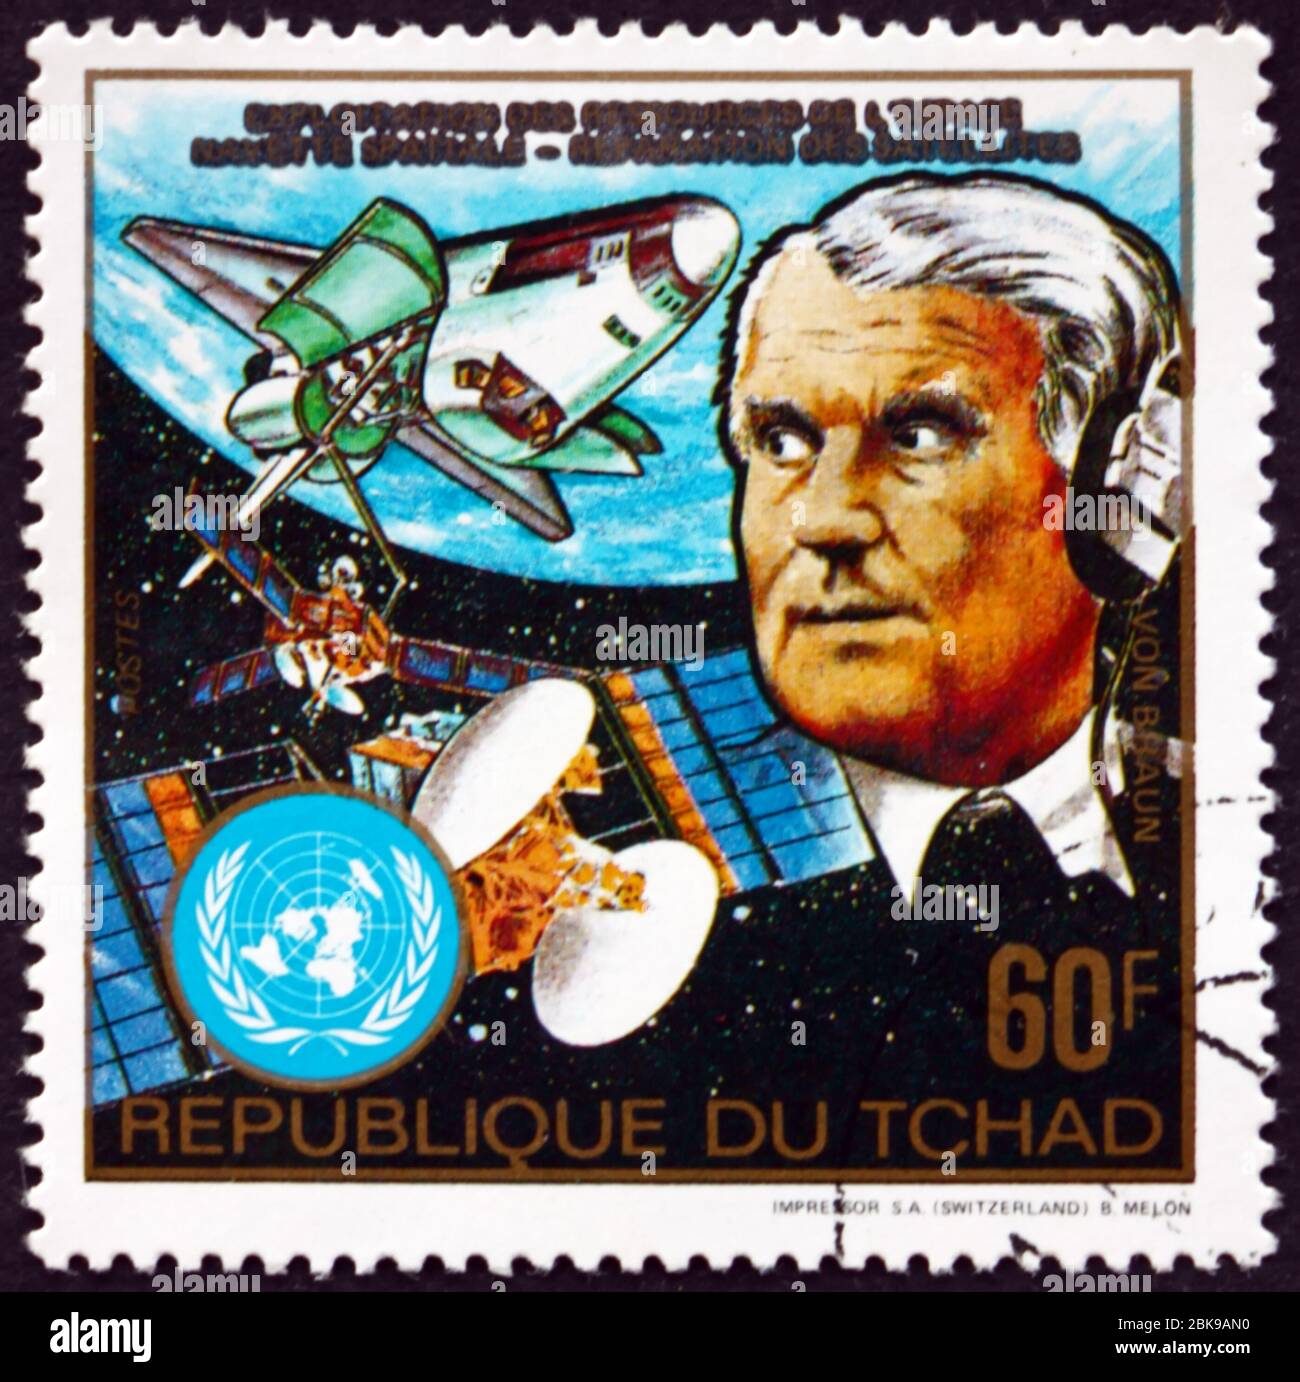 CHAD - UM 1983: Eine im Tschad gedruckte Briefmarke zeigt Wernher von Braun und Columbia Space Shuttle, um 1983 Stockfoto